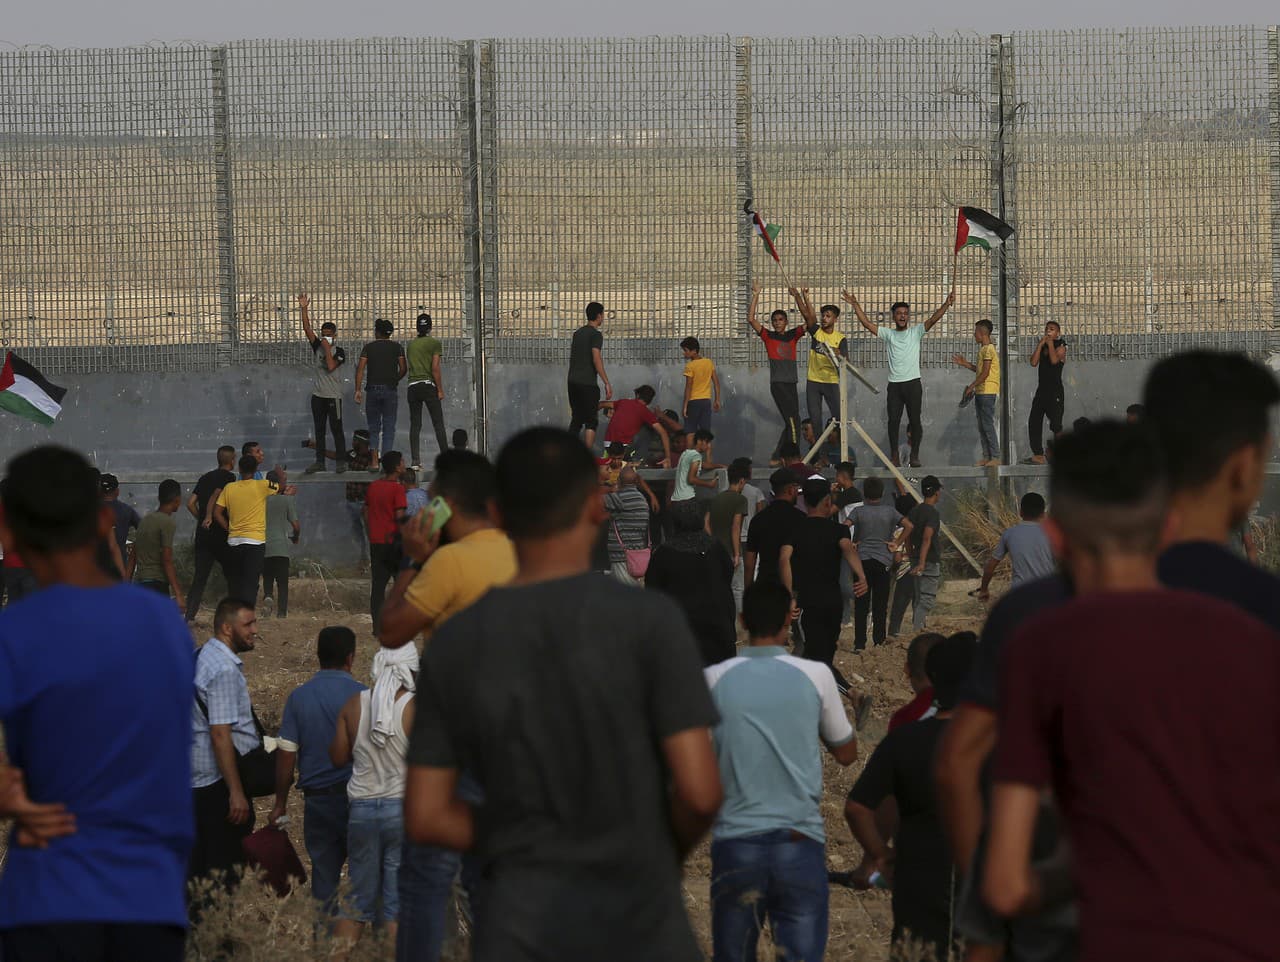 Izrael uskutočnil v sobotu večer nálety v pásme Gazy